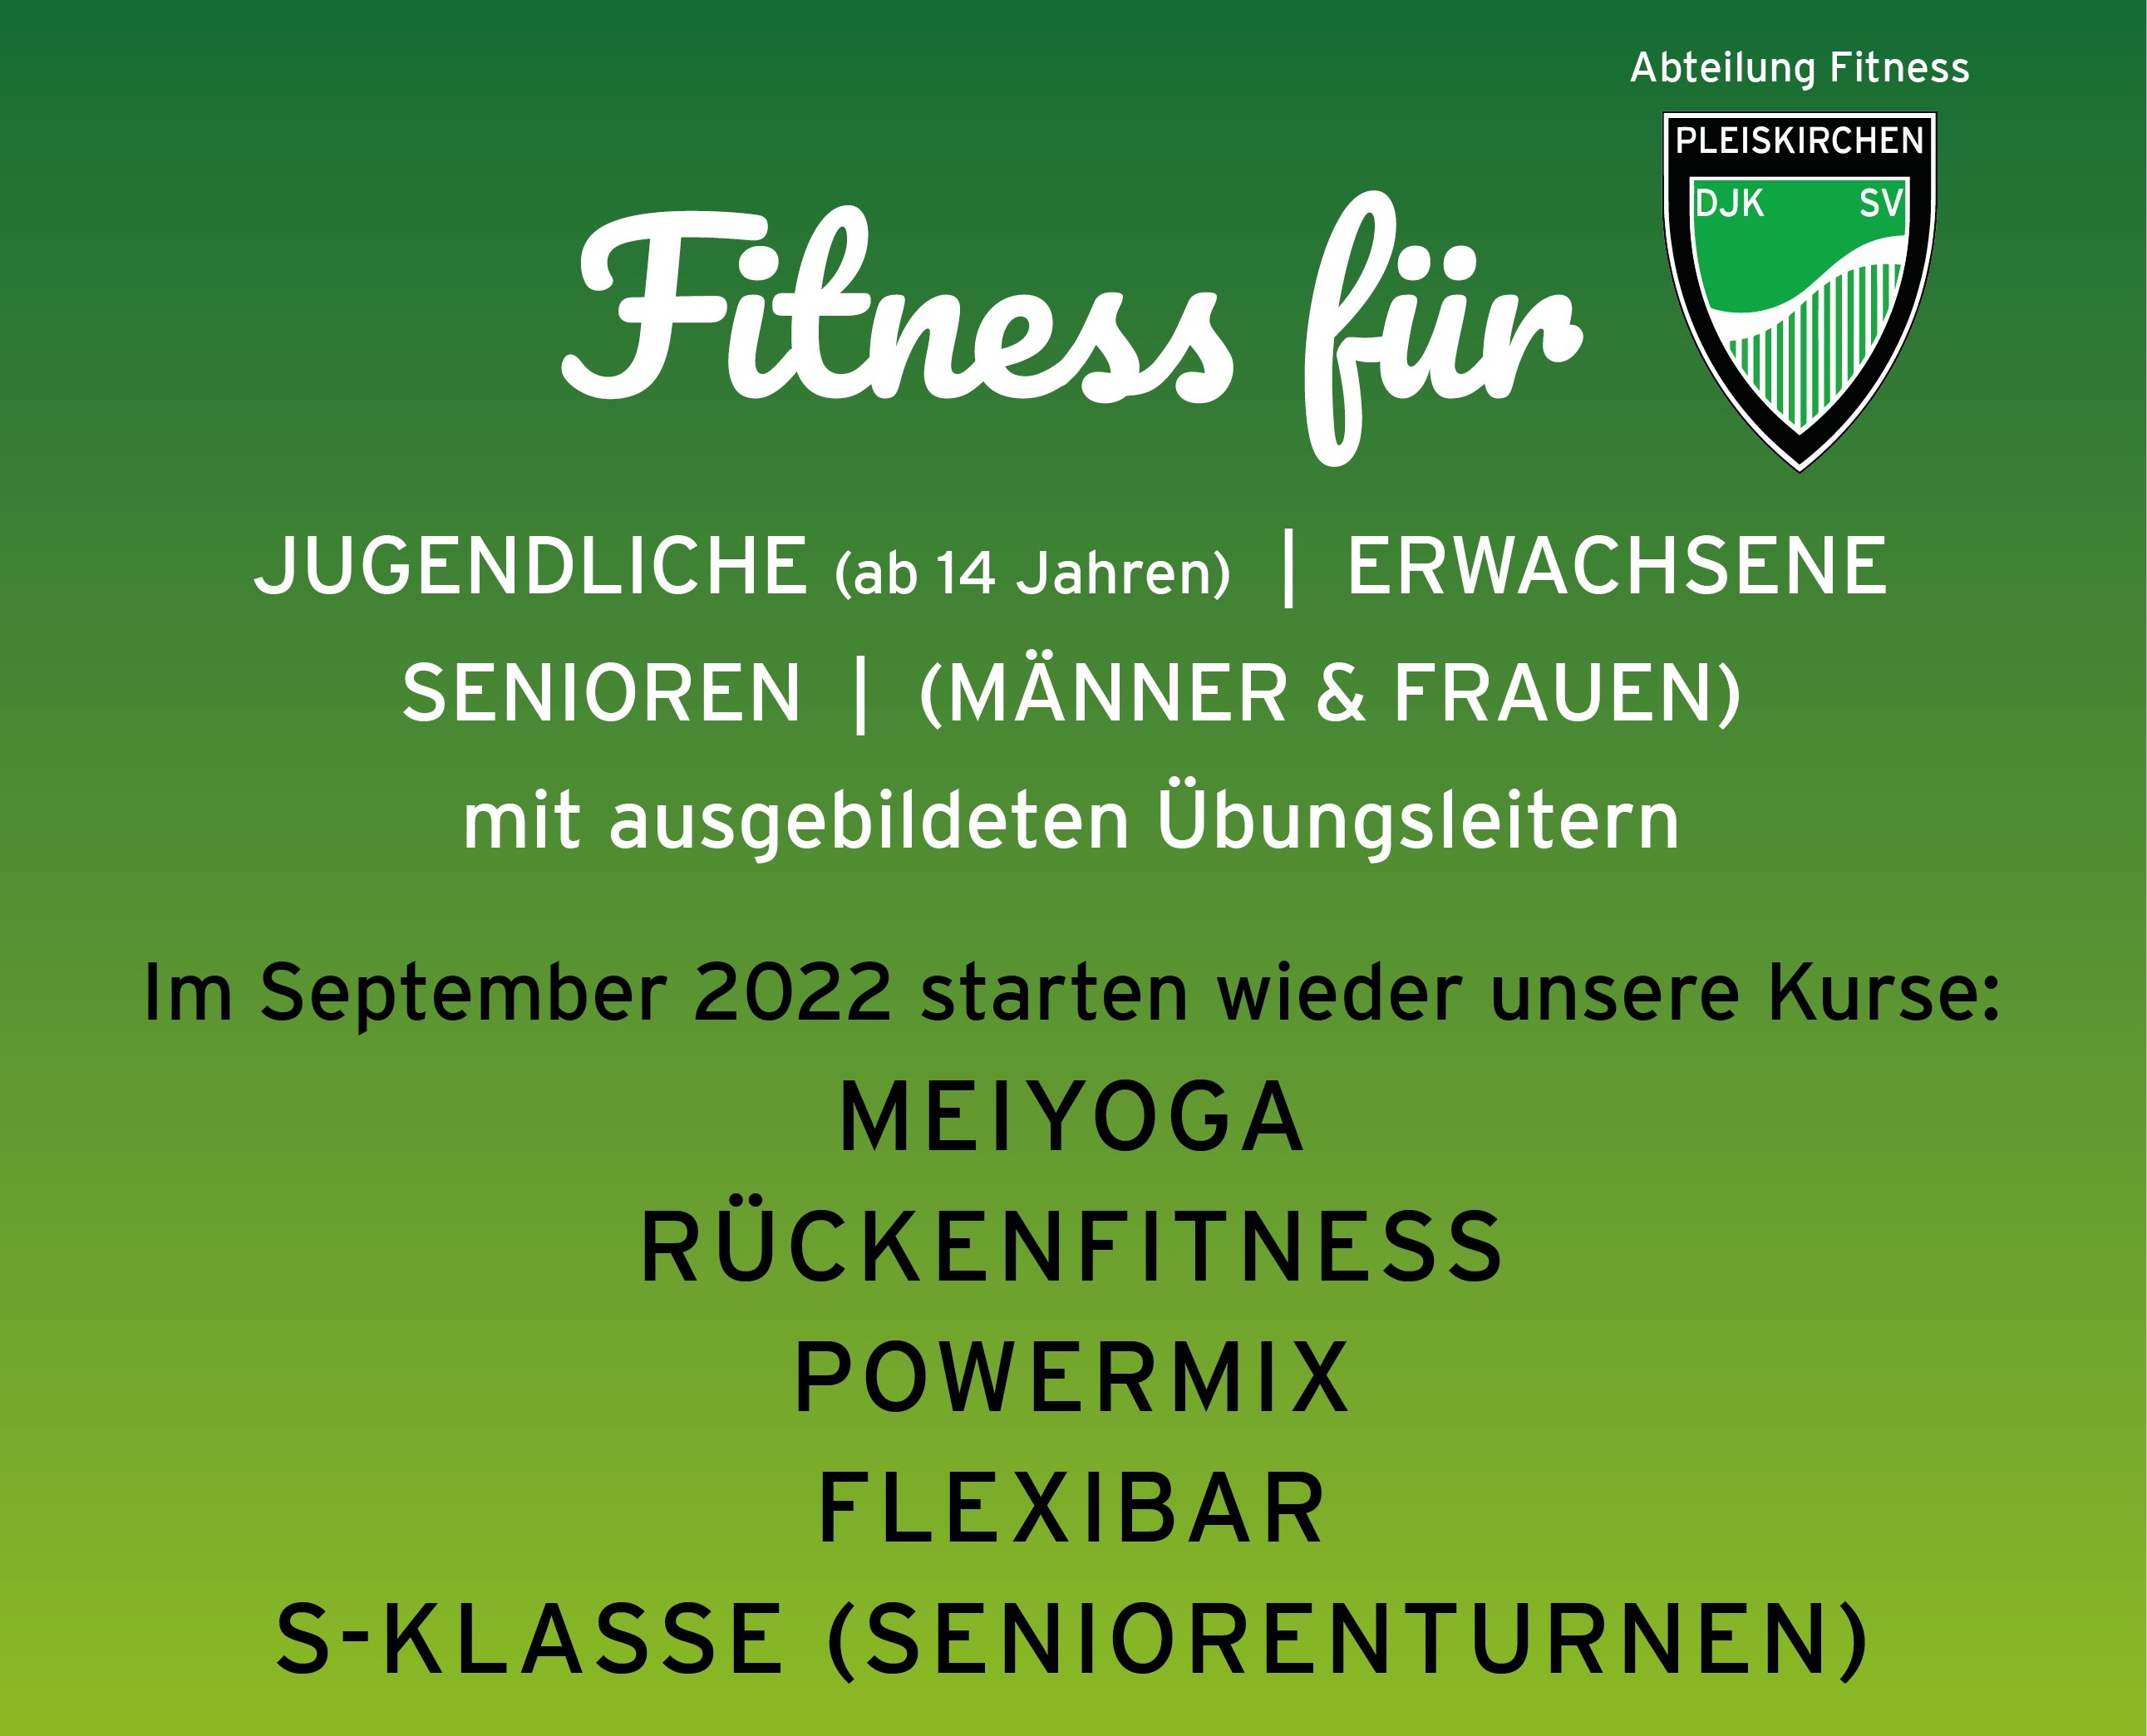 Vorankündigung: Fitnesskurse für Erwachsene | Anmelden vom 30.08. - 09.09. möglich!